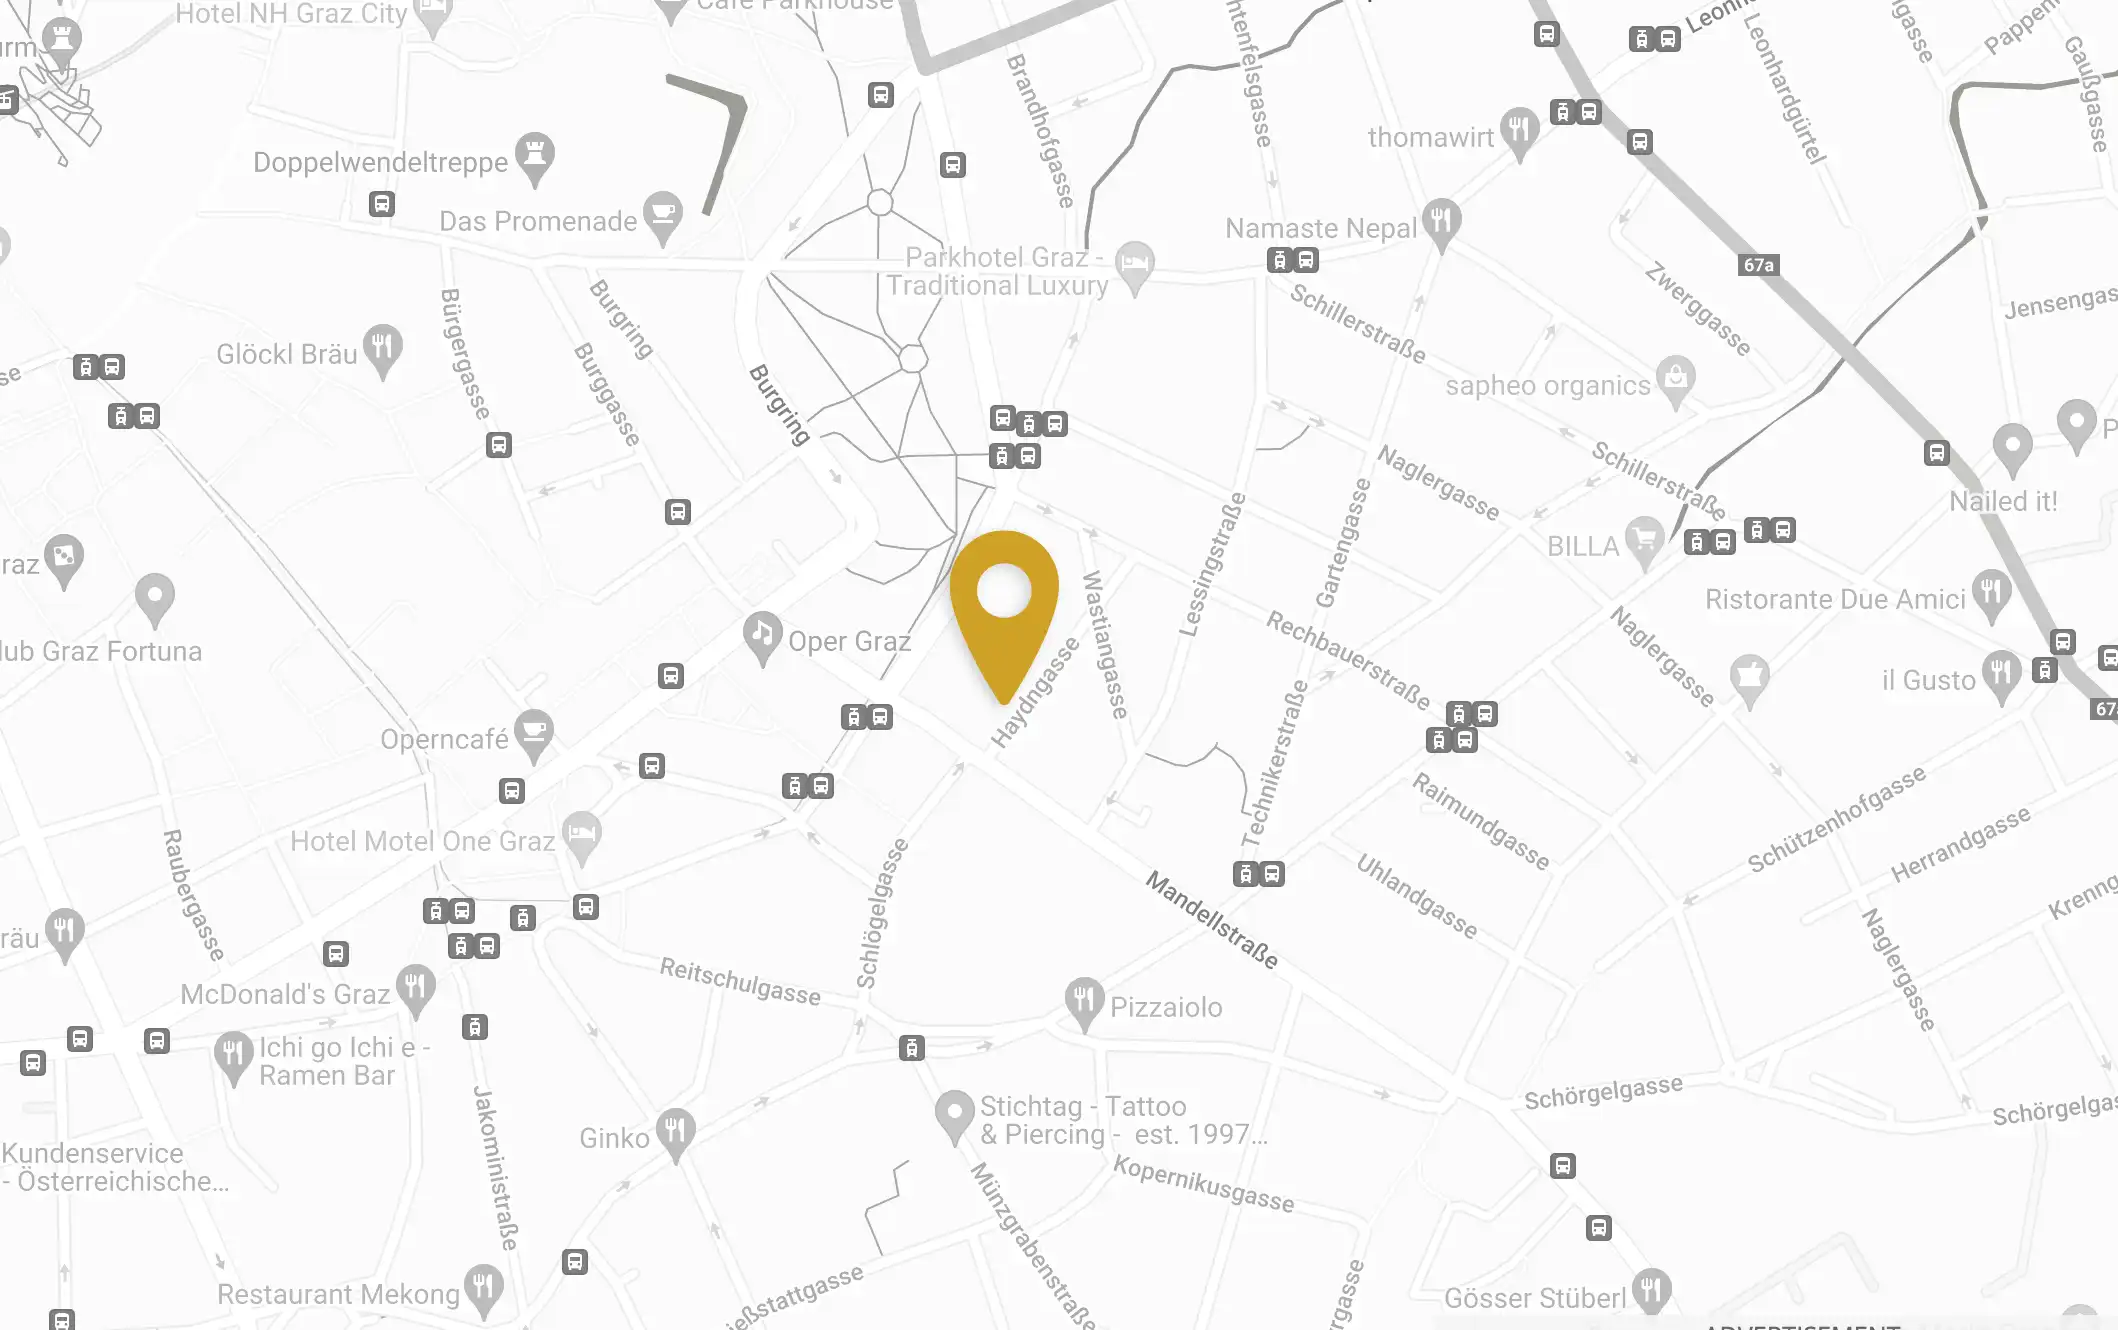 Google Map Darstellung Graz Kaiser Josef Markt Haydngasse Unternehmensstandort von BRAND IMAGES e.U.